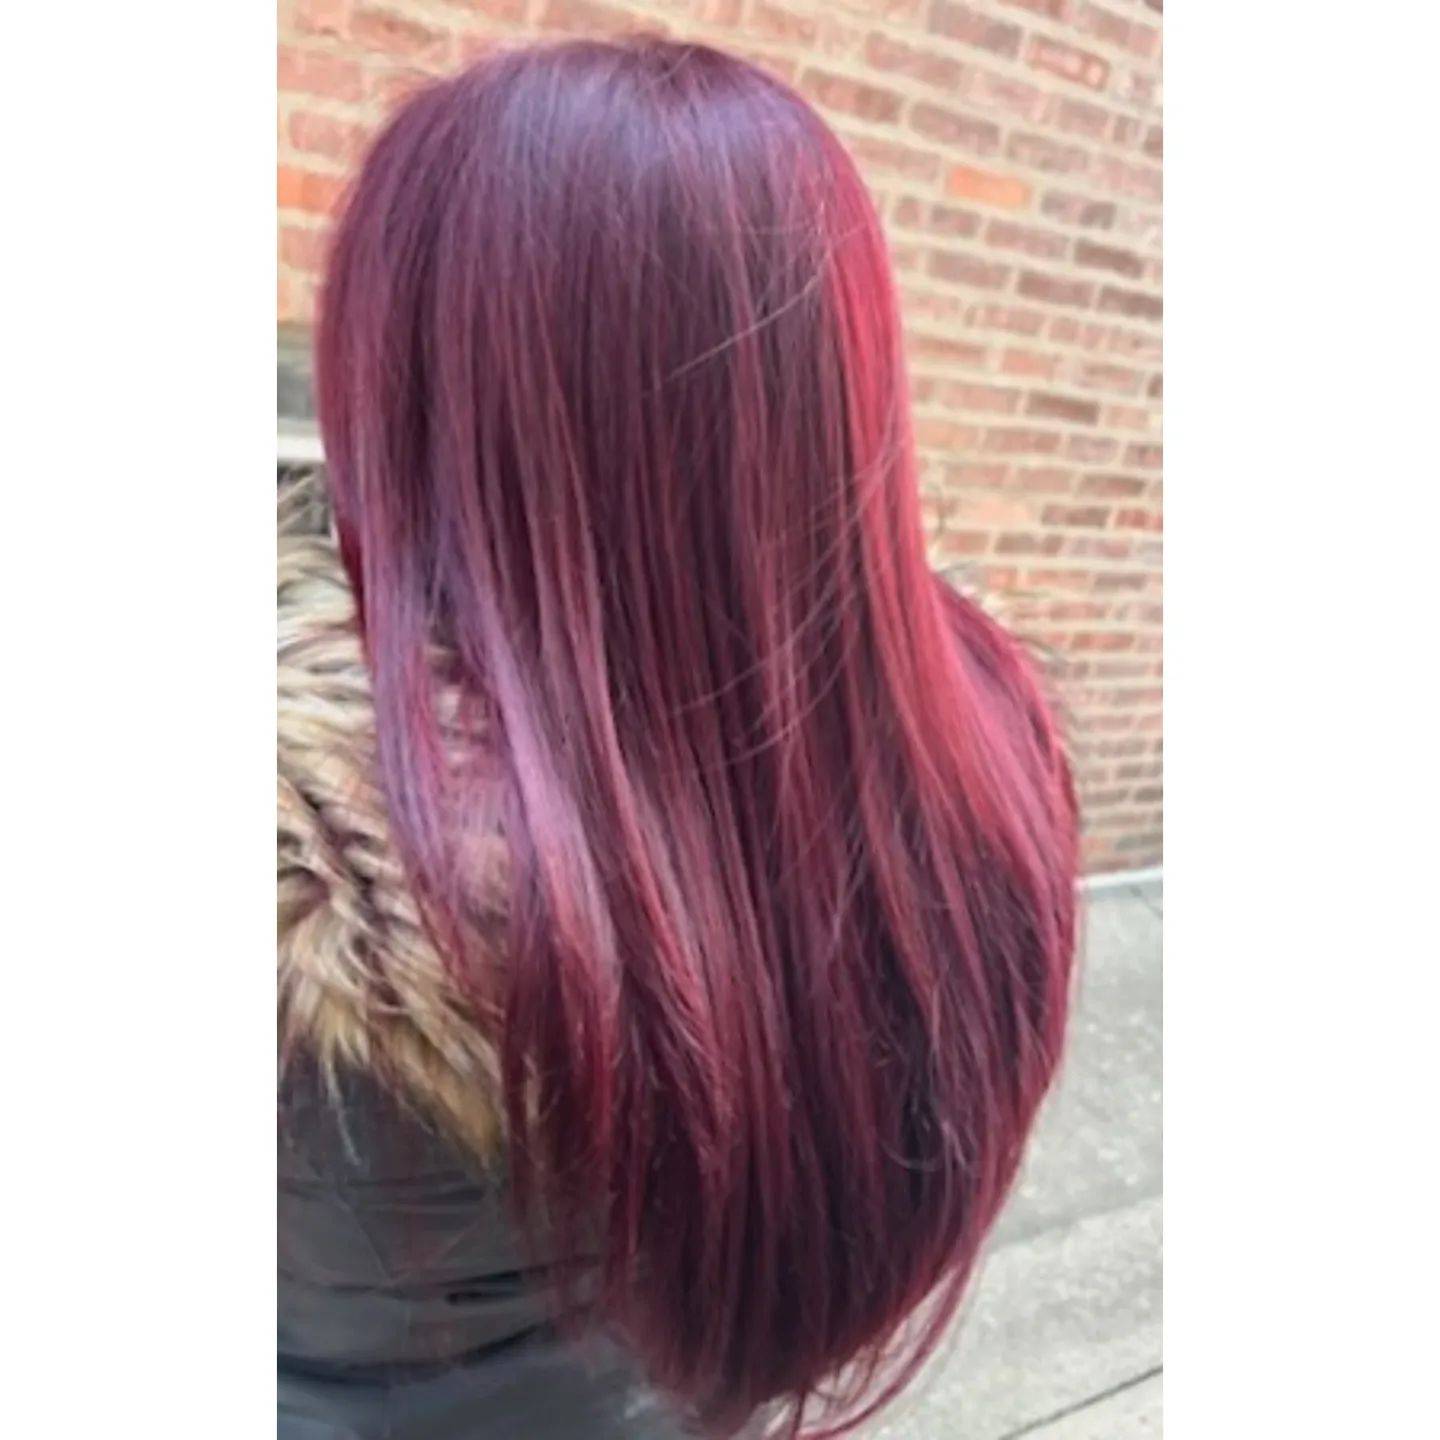 Burgundy hair color 247 burgundy hair color | burgundy hair color for women | burgundy hair color highlights Burgundy Hair Color